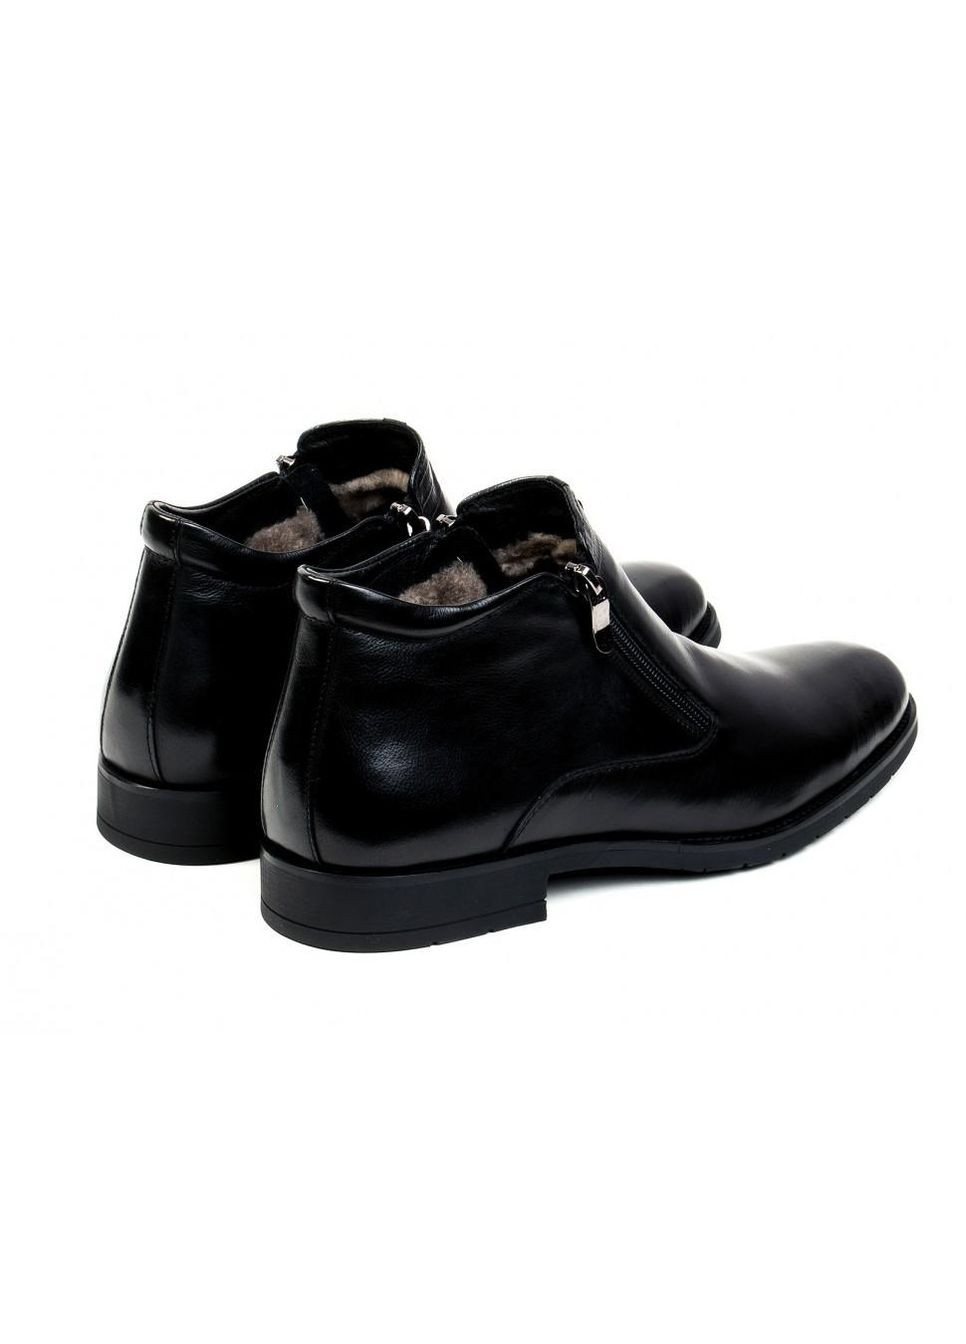 Черные зимние ботинки 7164120 цвет черный Carlo Delari